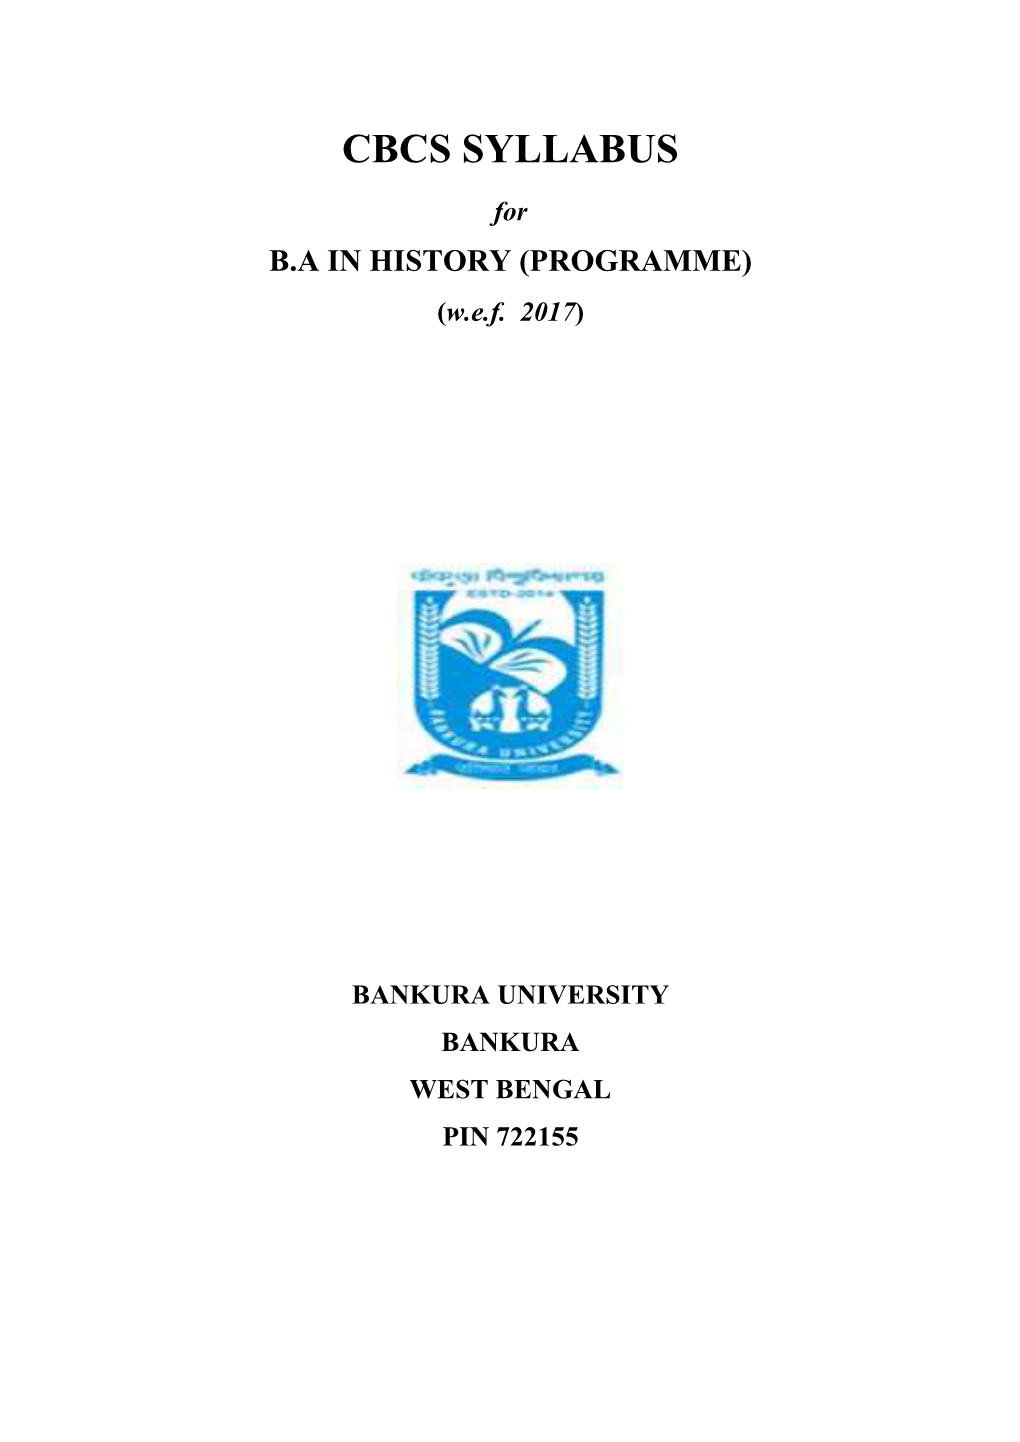 History Programme Syllabus